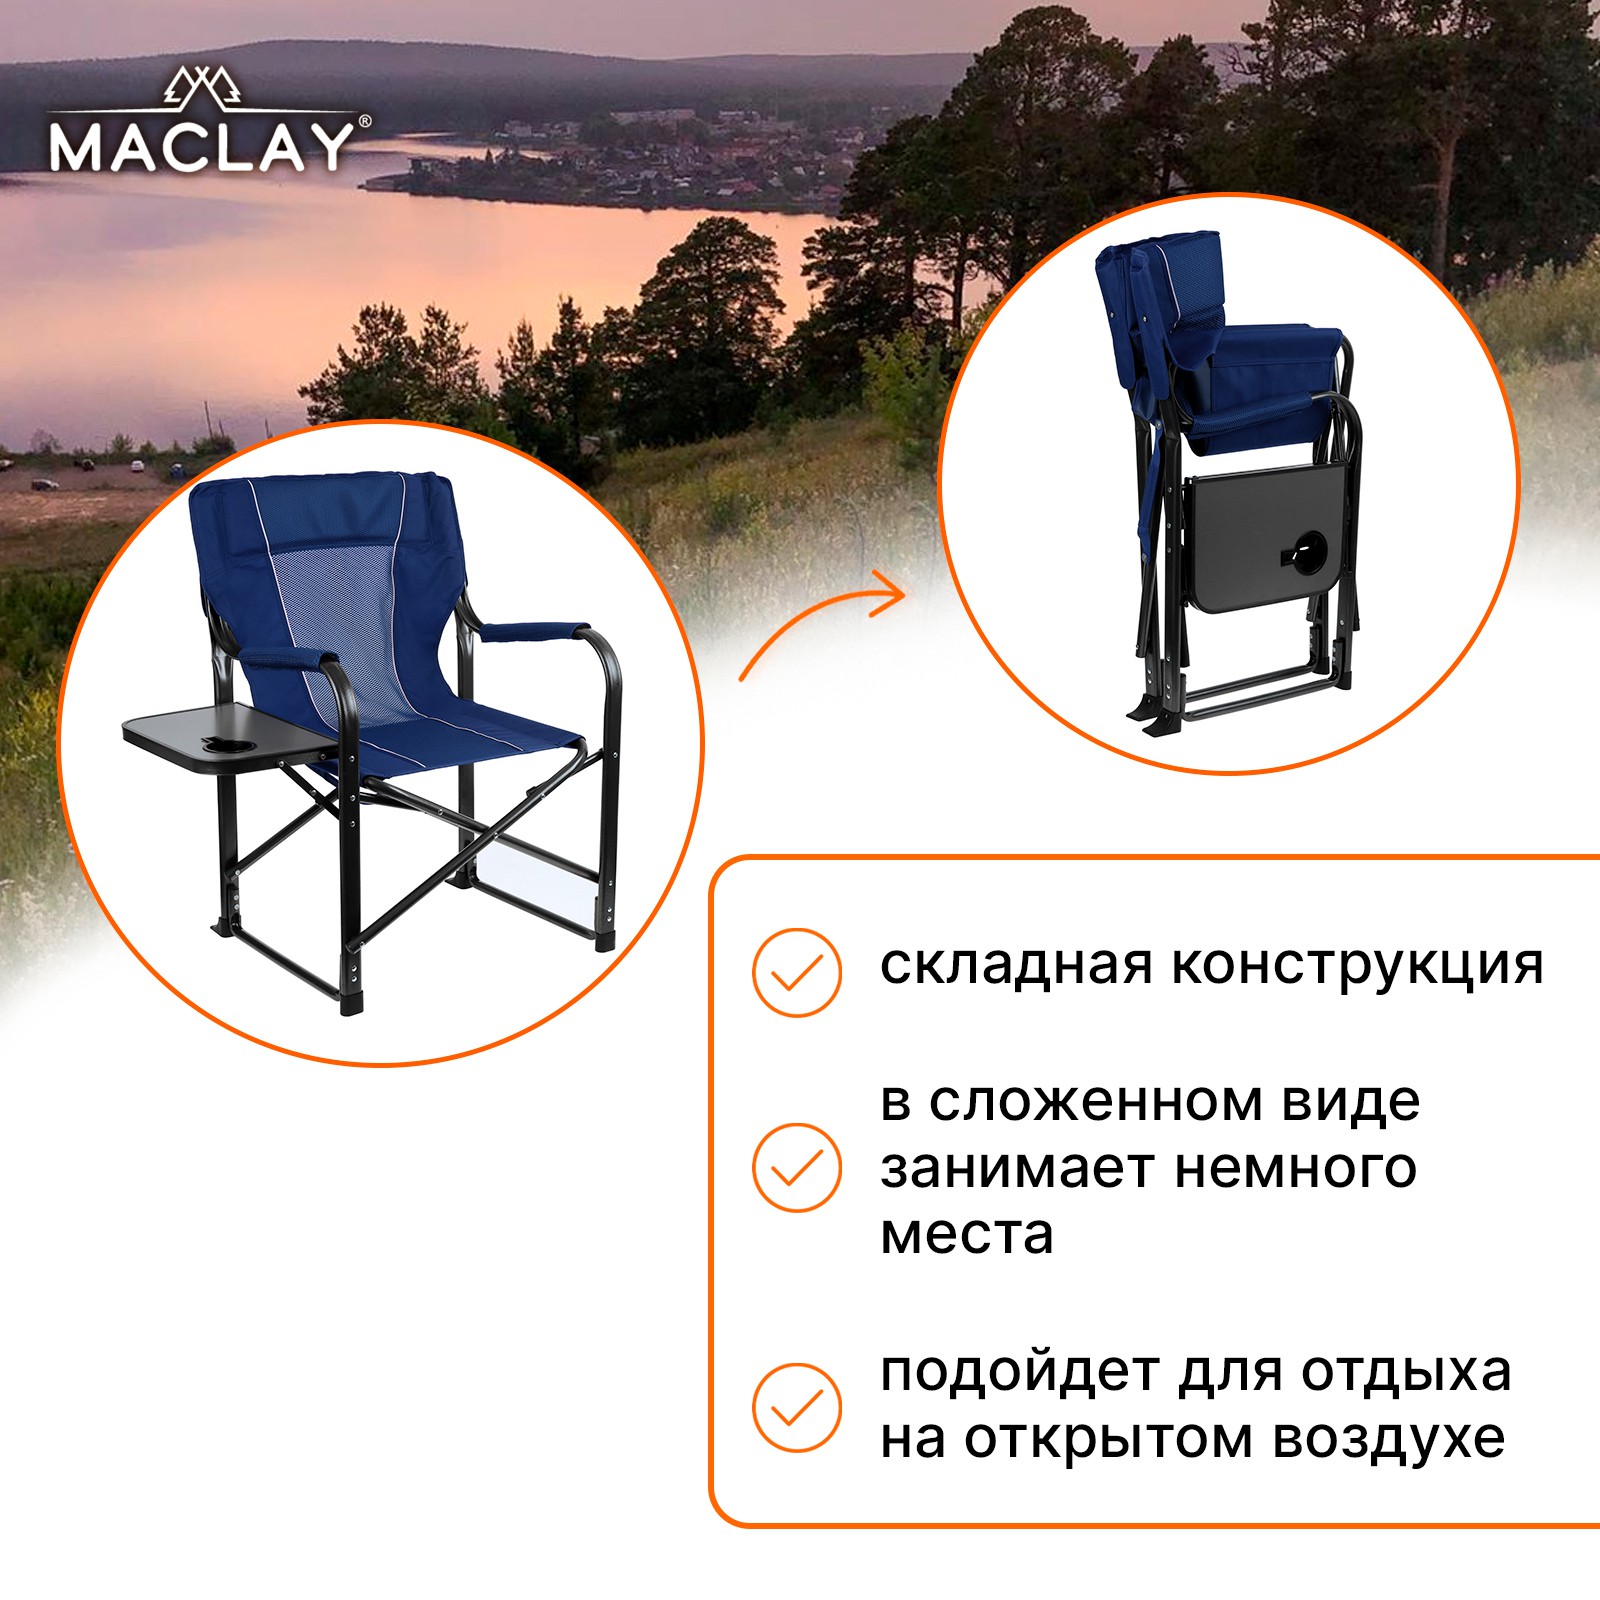 Кресло Maclay туристическое стол с подстаканником р. 63 х 47 х 94 см цвет синий - фото 3